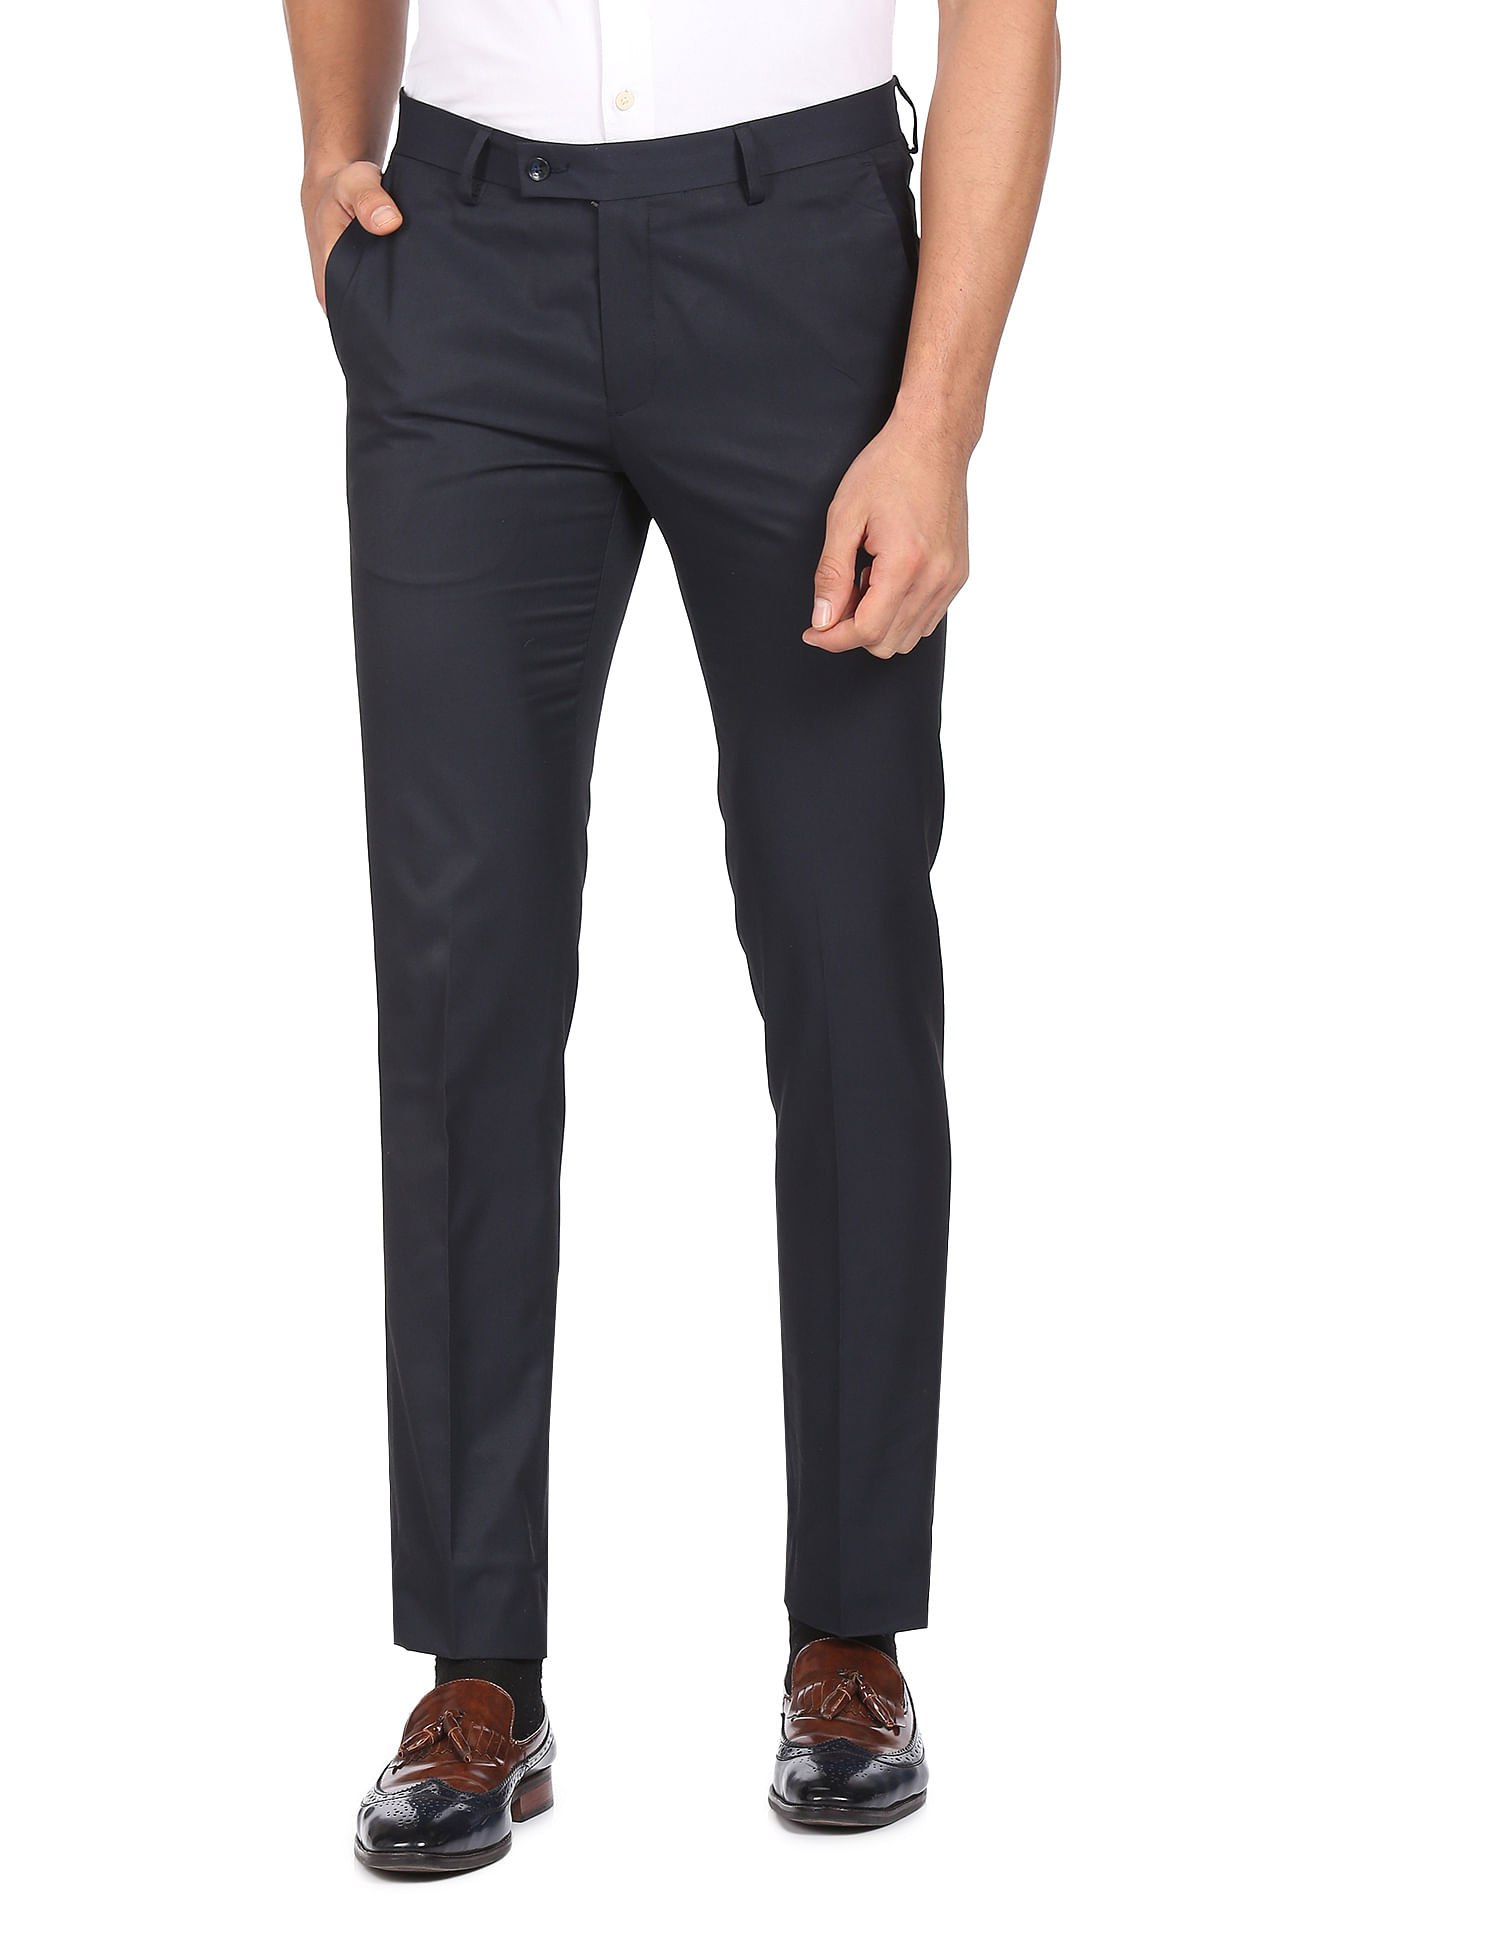 Arrow Pants 42x30 Tan Exact Fit Flat Front Polyester Blend NEW | eBay